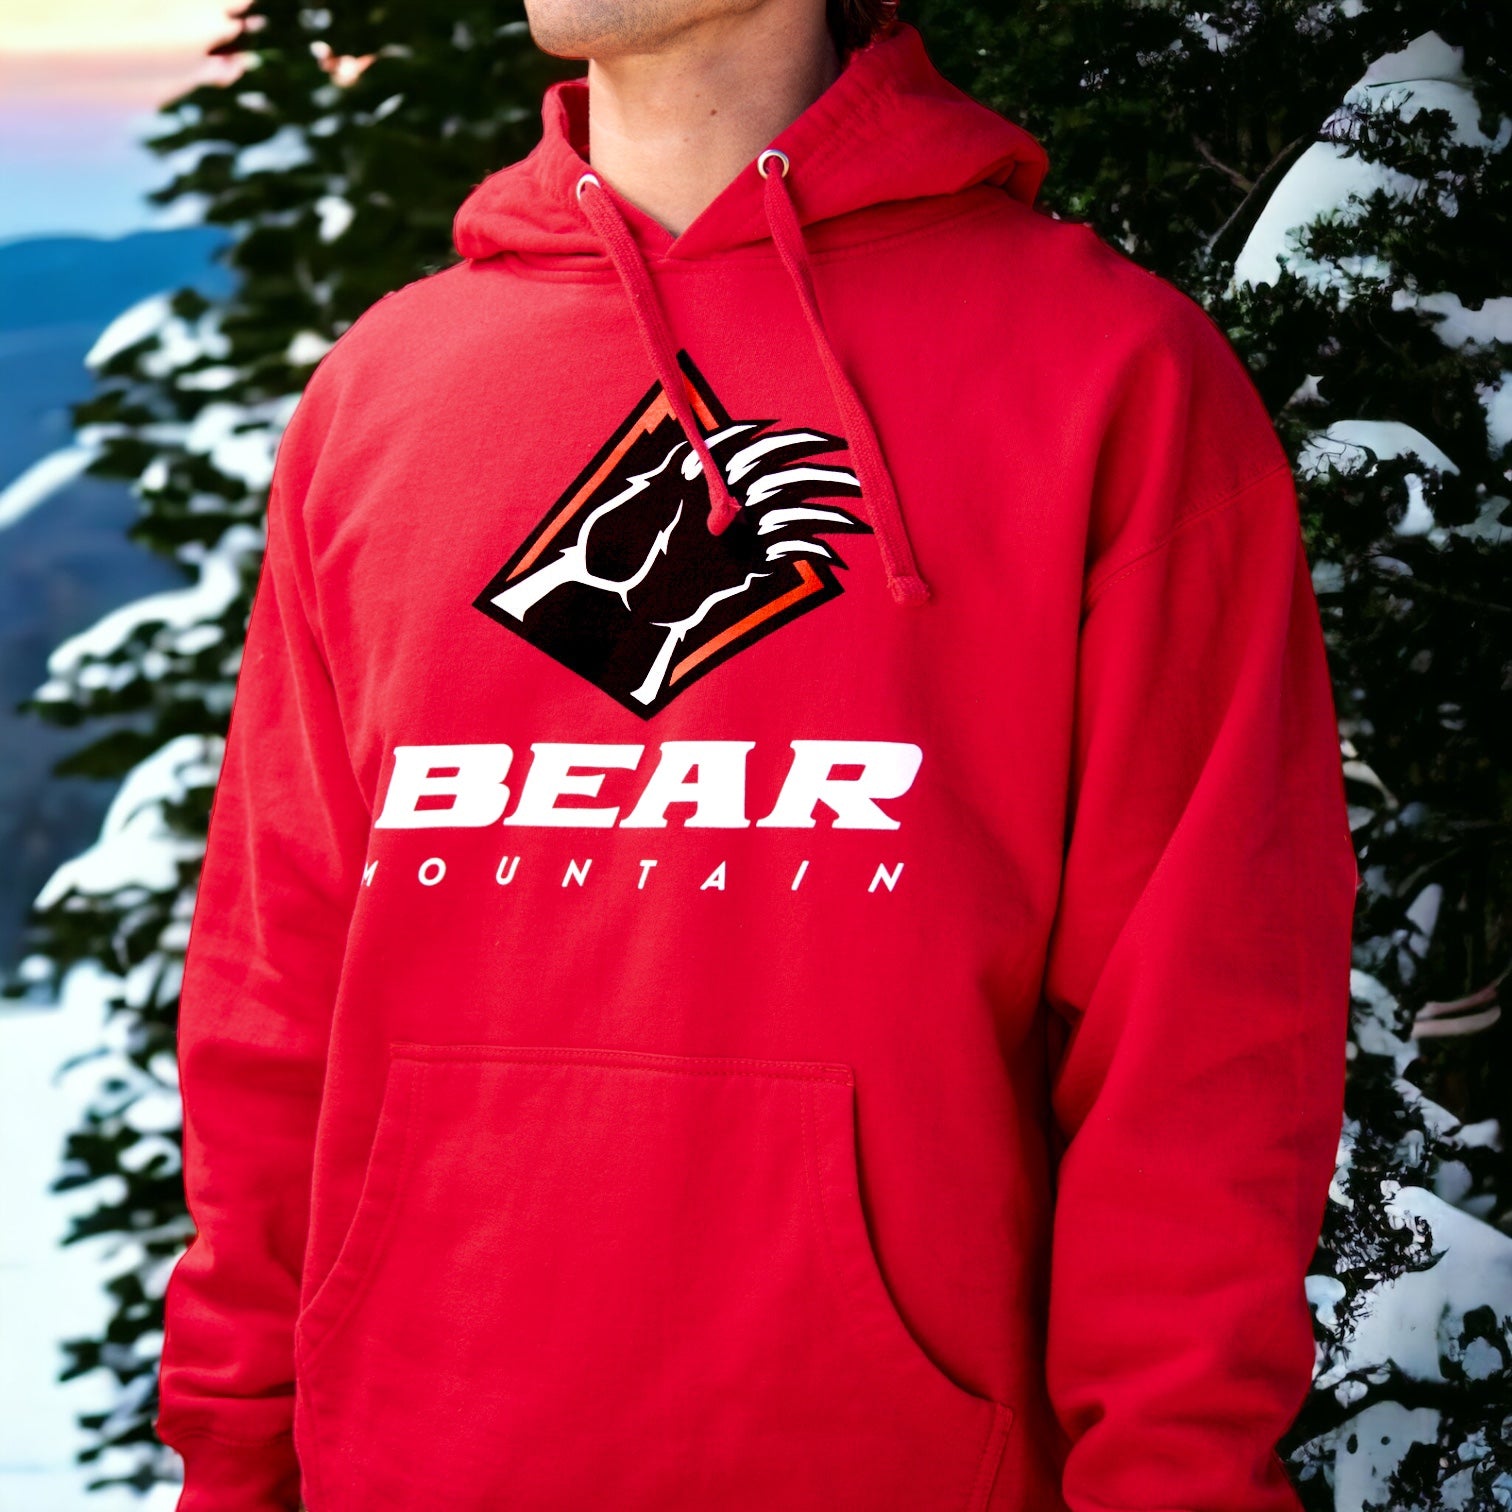 Bear Mountain bear claw logo wear hoodie in red